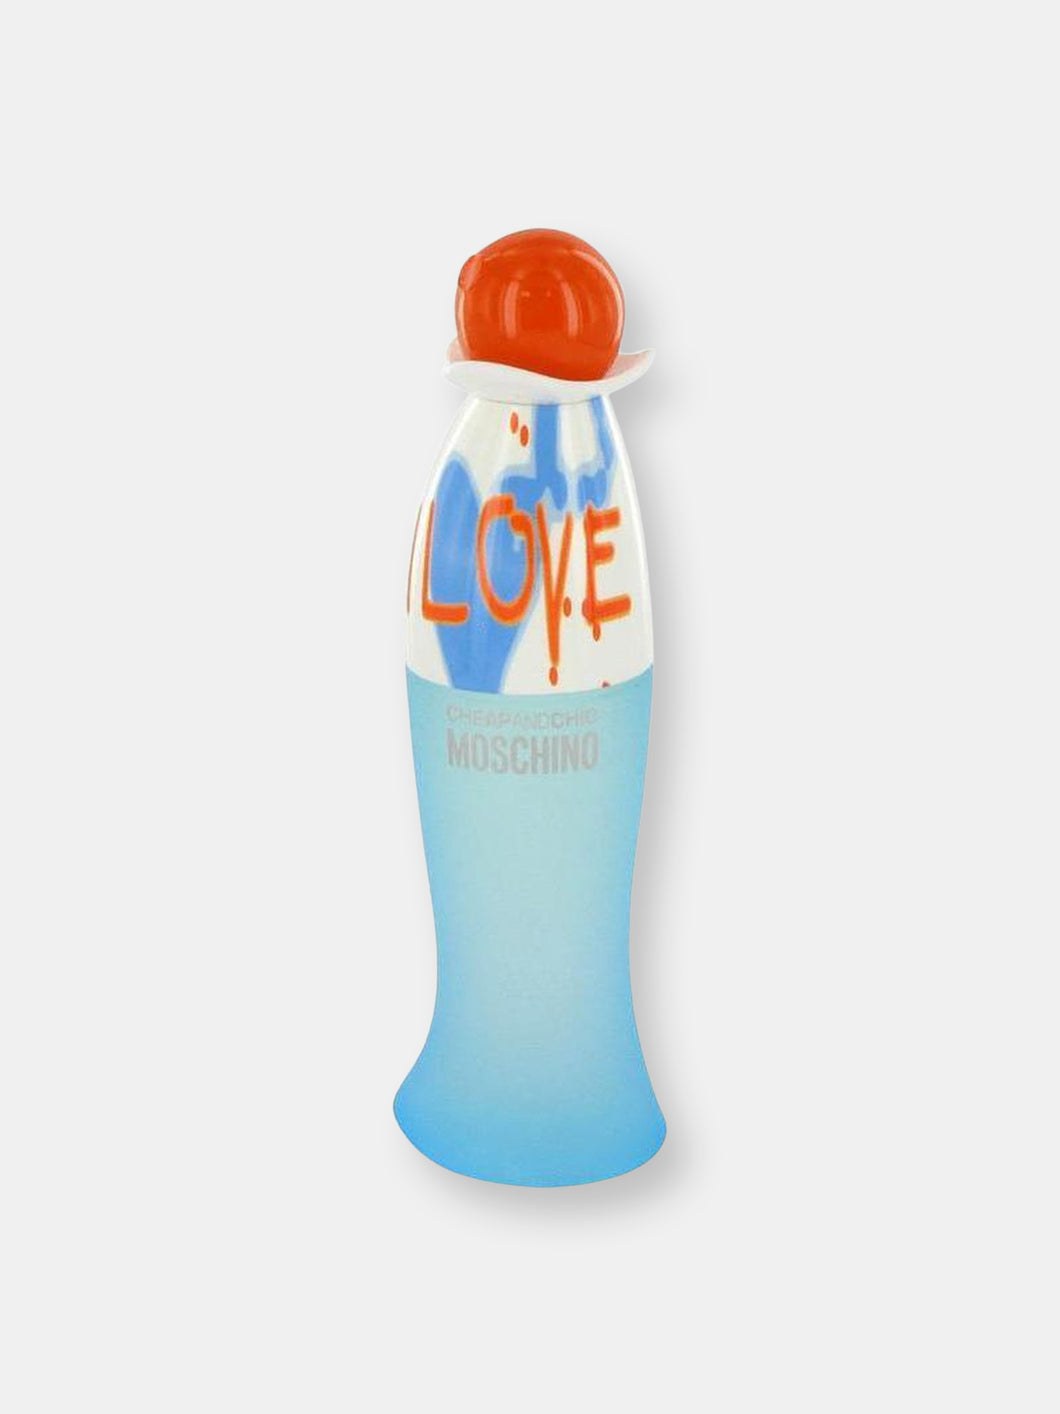 I Love Love by Moschino Eau De Toilette Spray (Tester) 3.4 oz